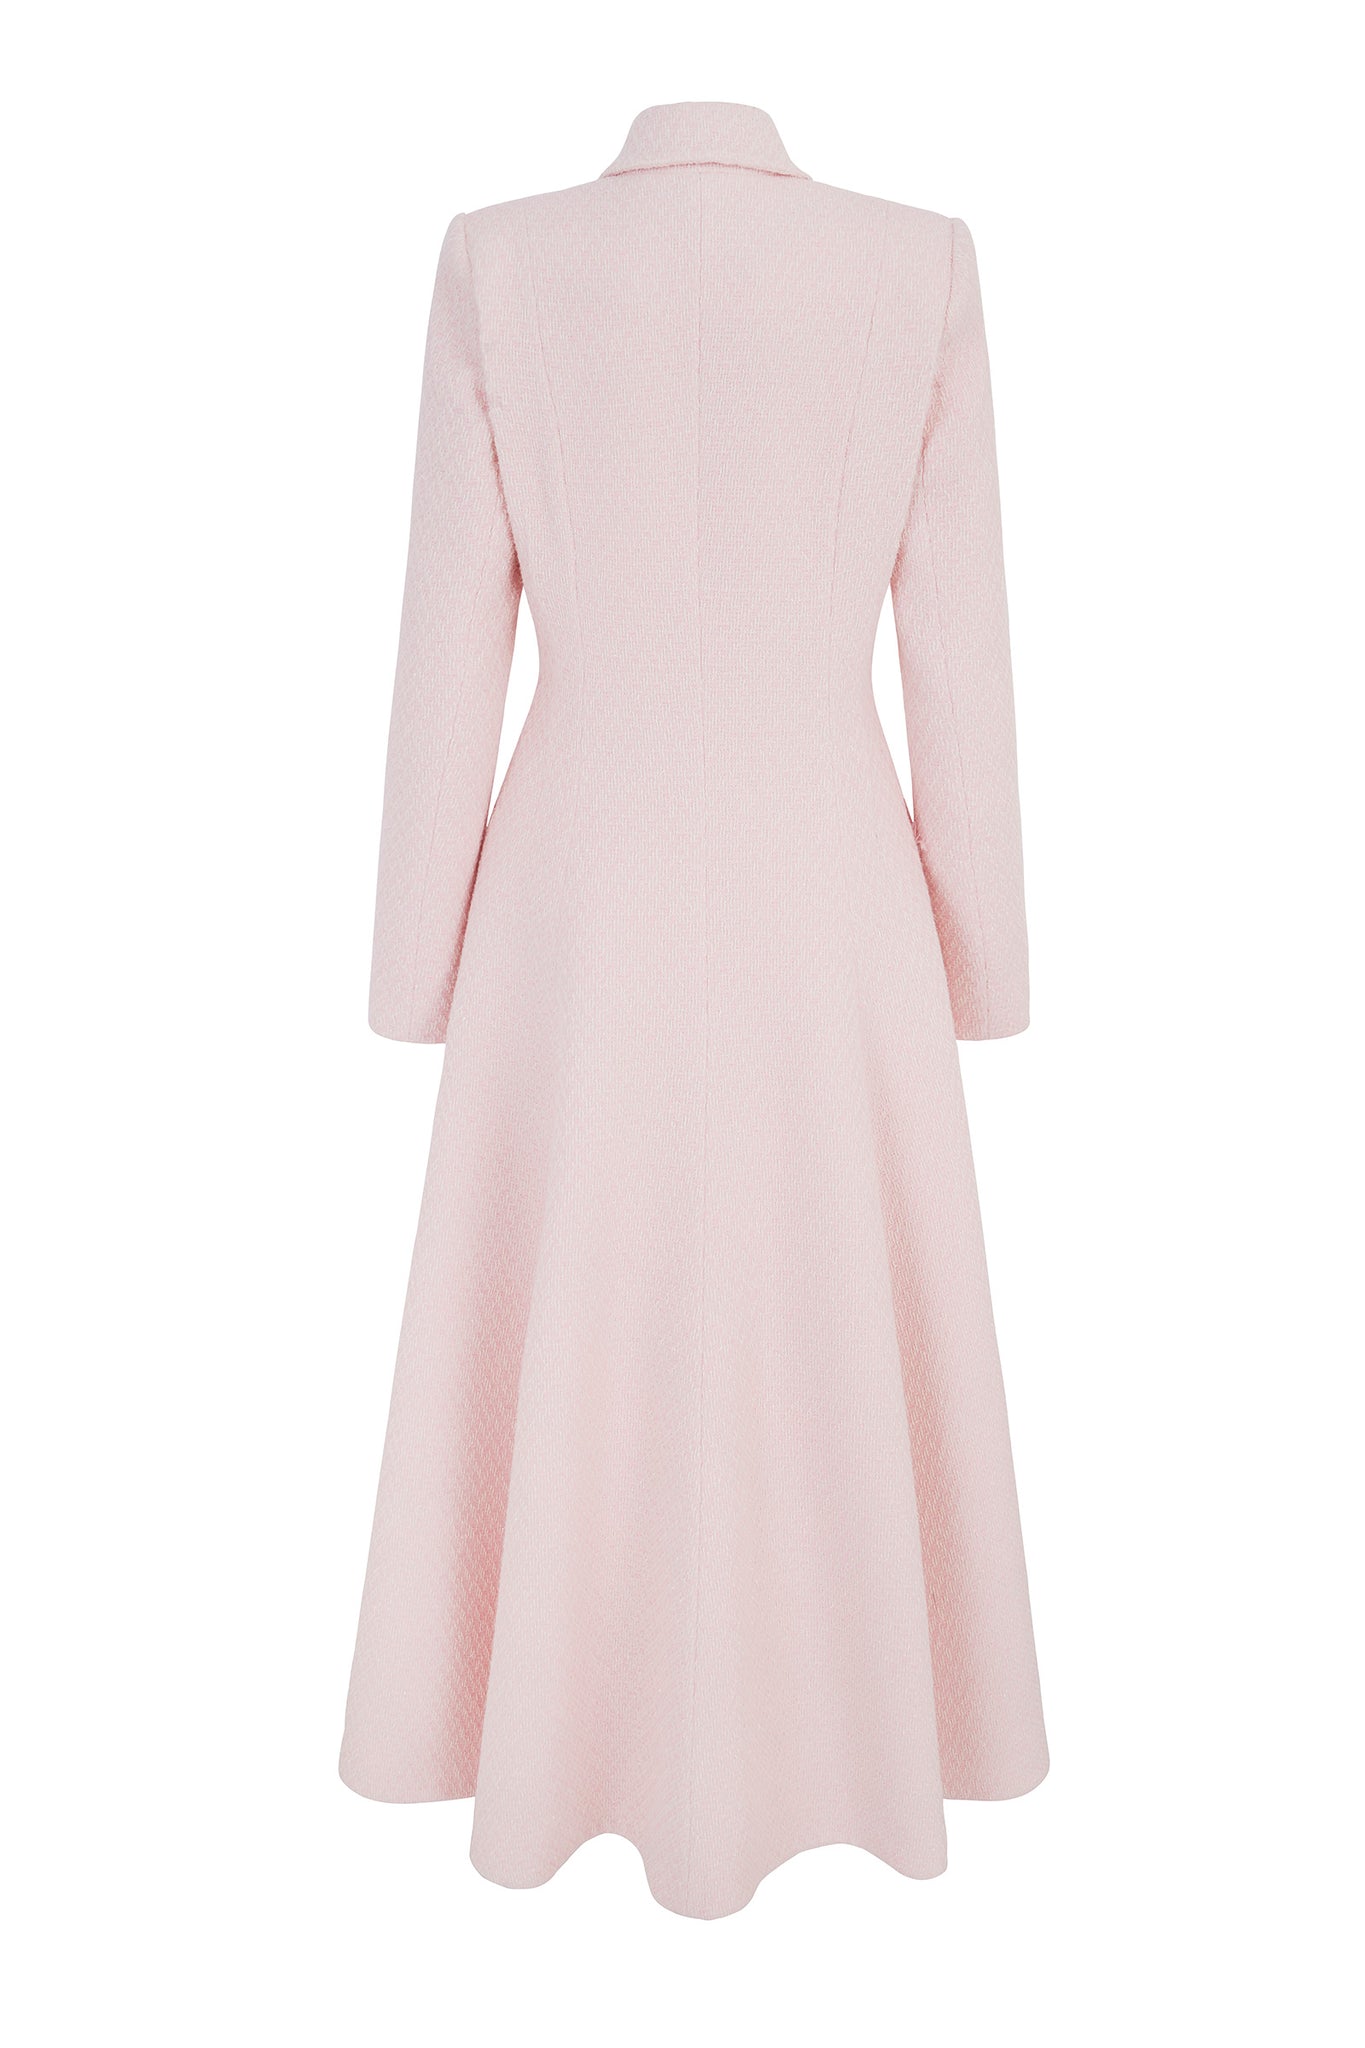 Suzannah London | Alabama Coat | Pink Shimmer Tweed | Luxury Coating